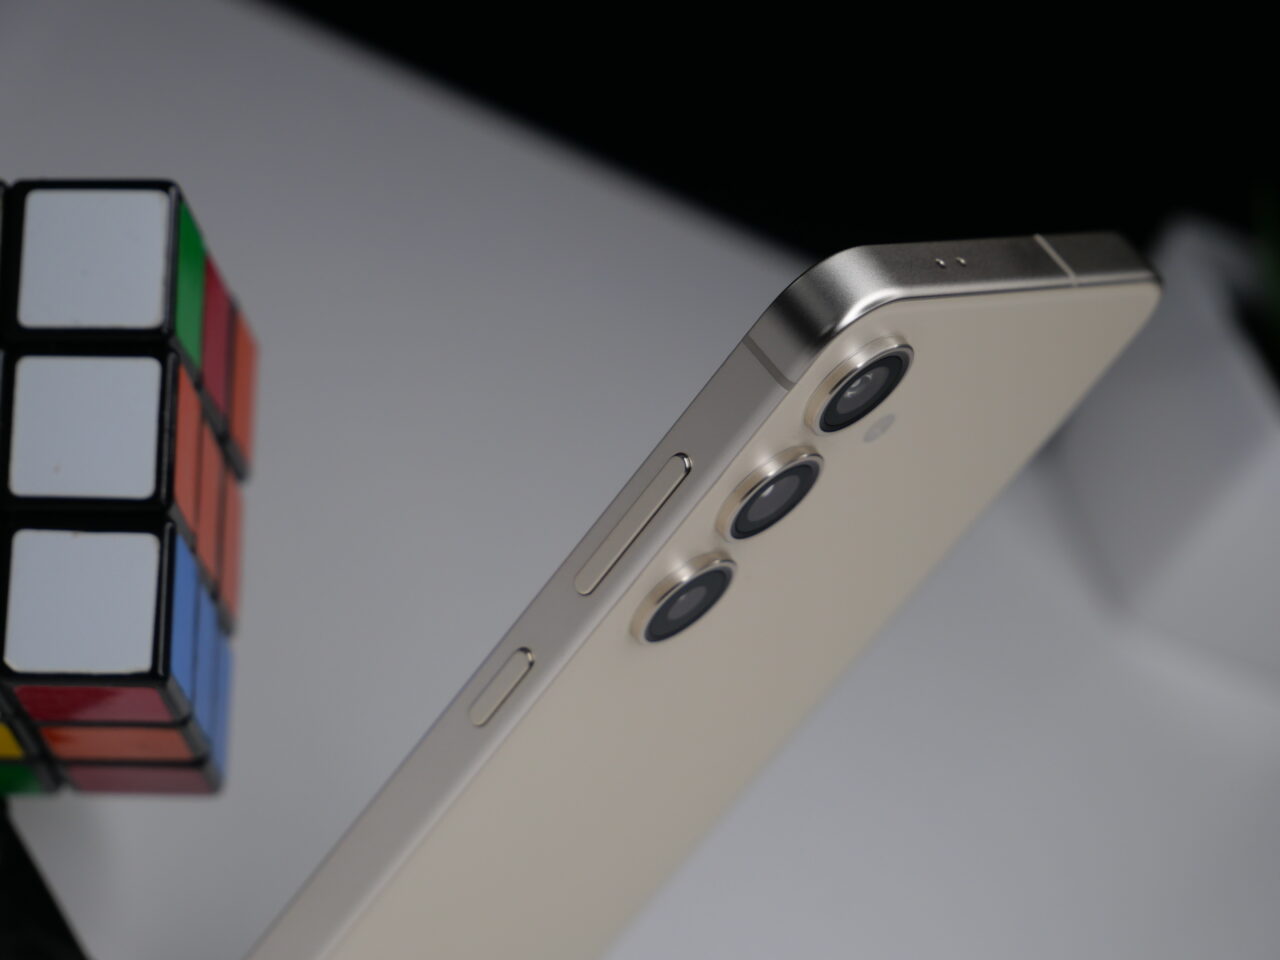 Zbliżenie na złoty smartfon z potrójnym aparatem i przyciskami po lewej stronie, z rozmytym kolorowym kostką Rubika w tle.